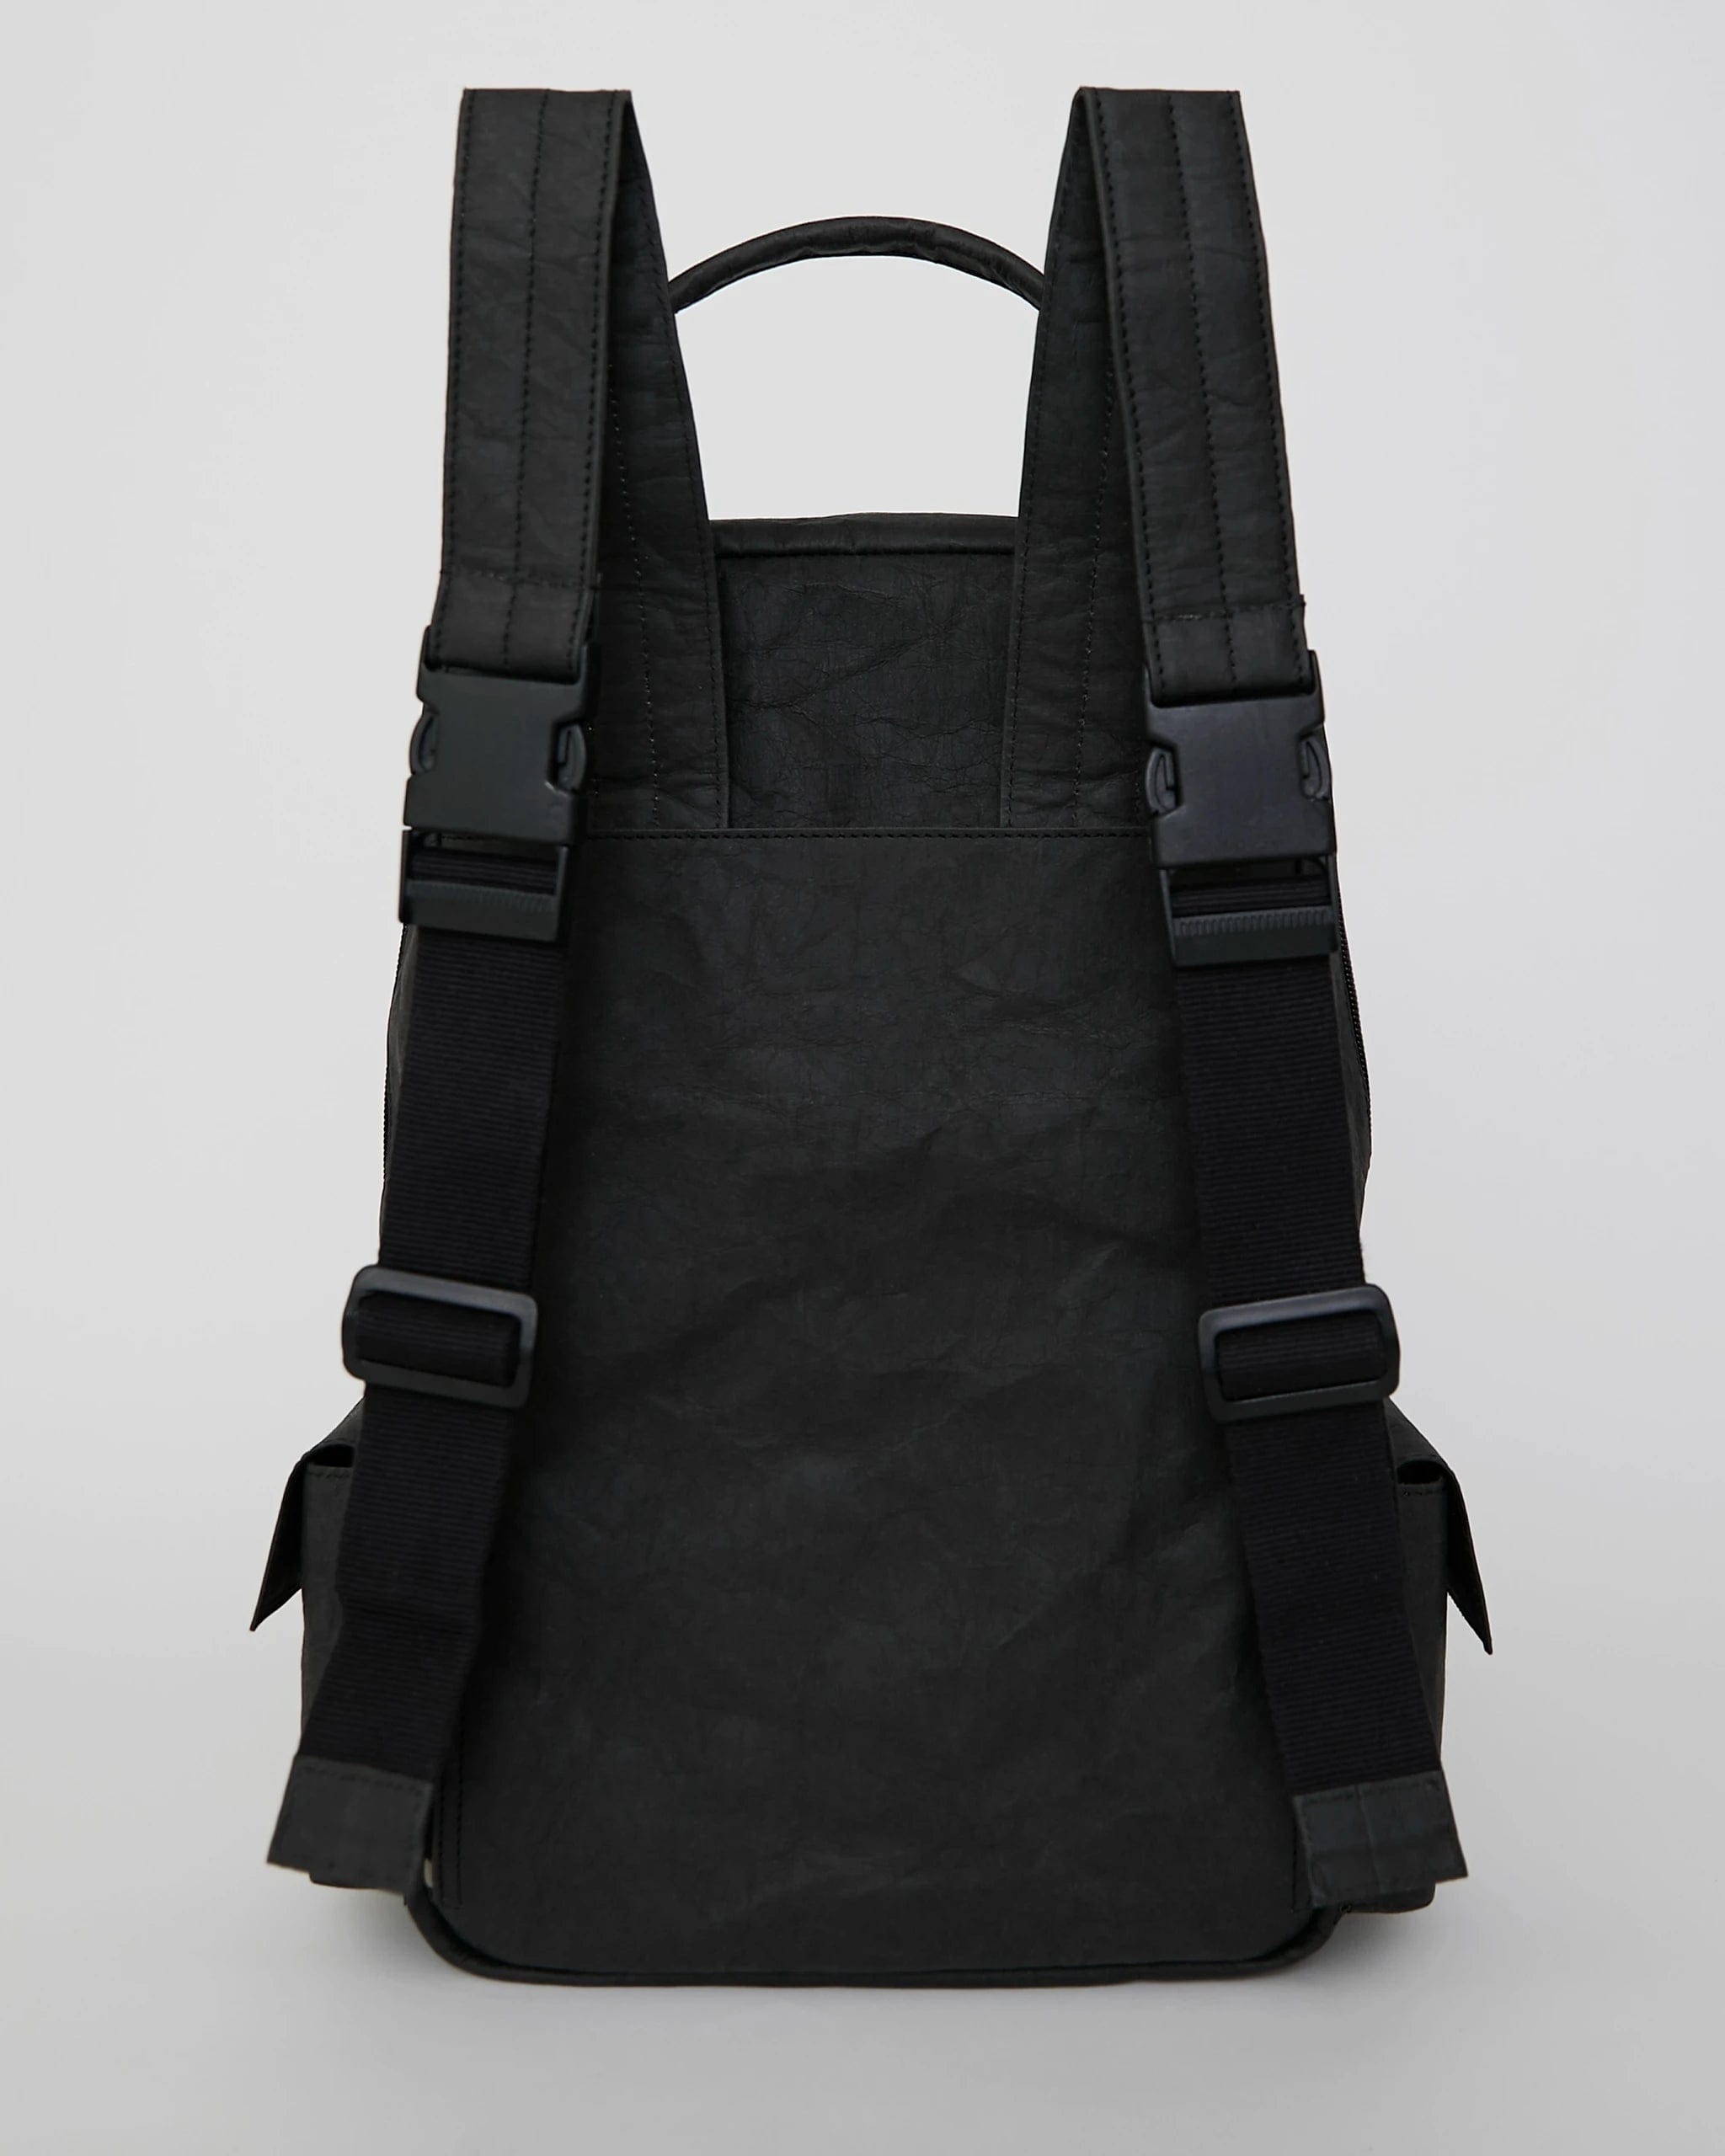 Immaculate Vegan Verlan Vegan Leather Wood Backpack | Black